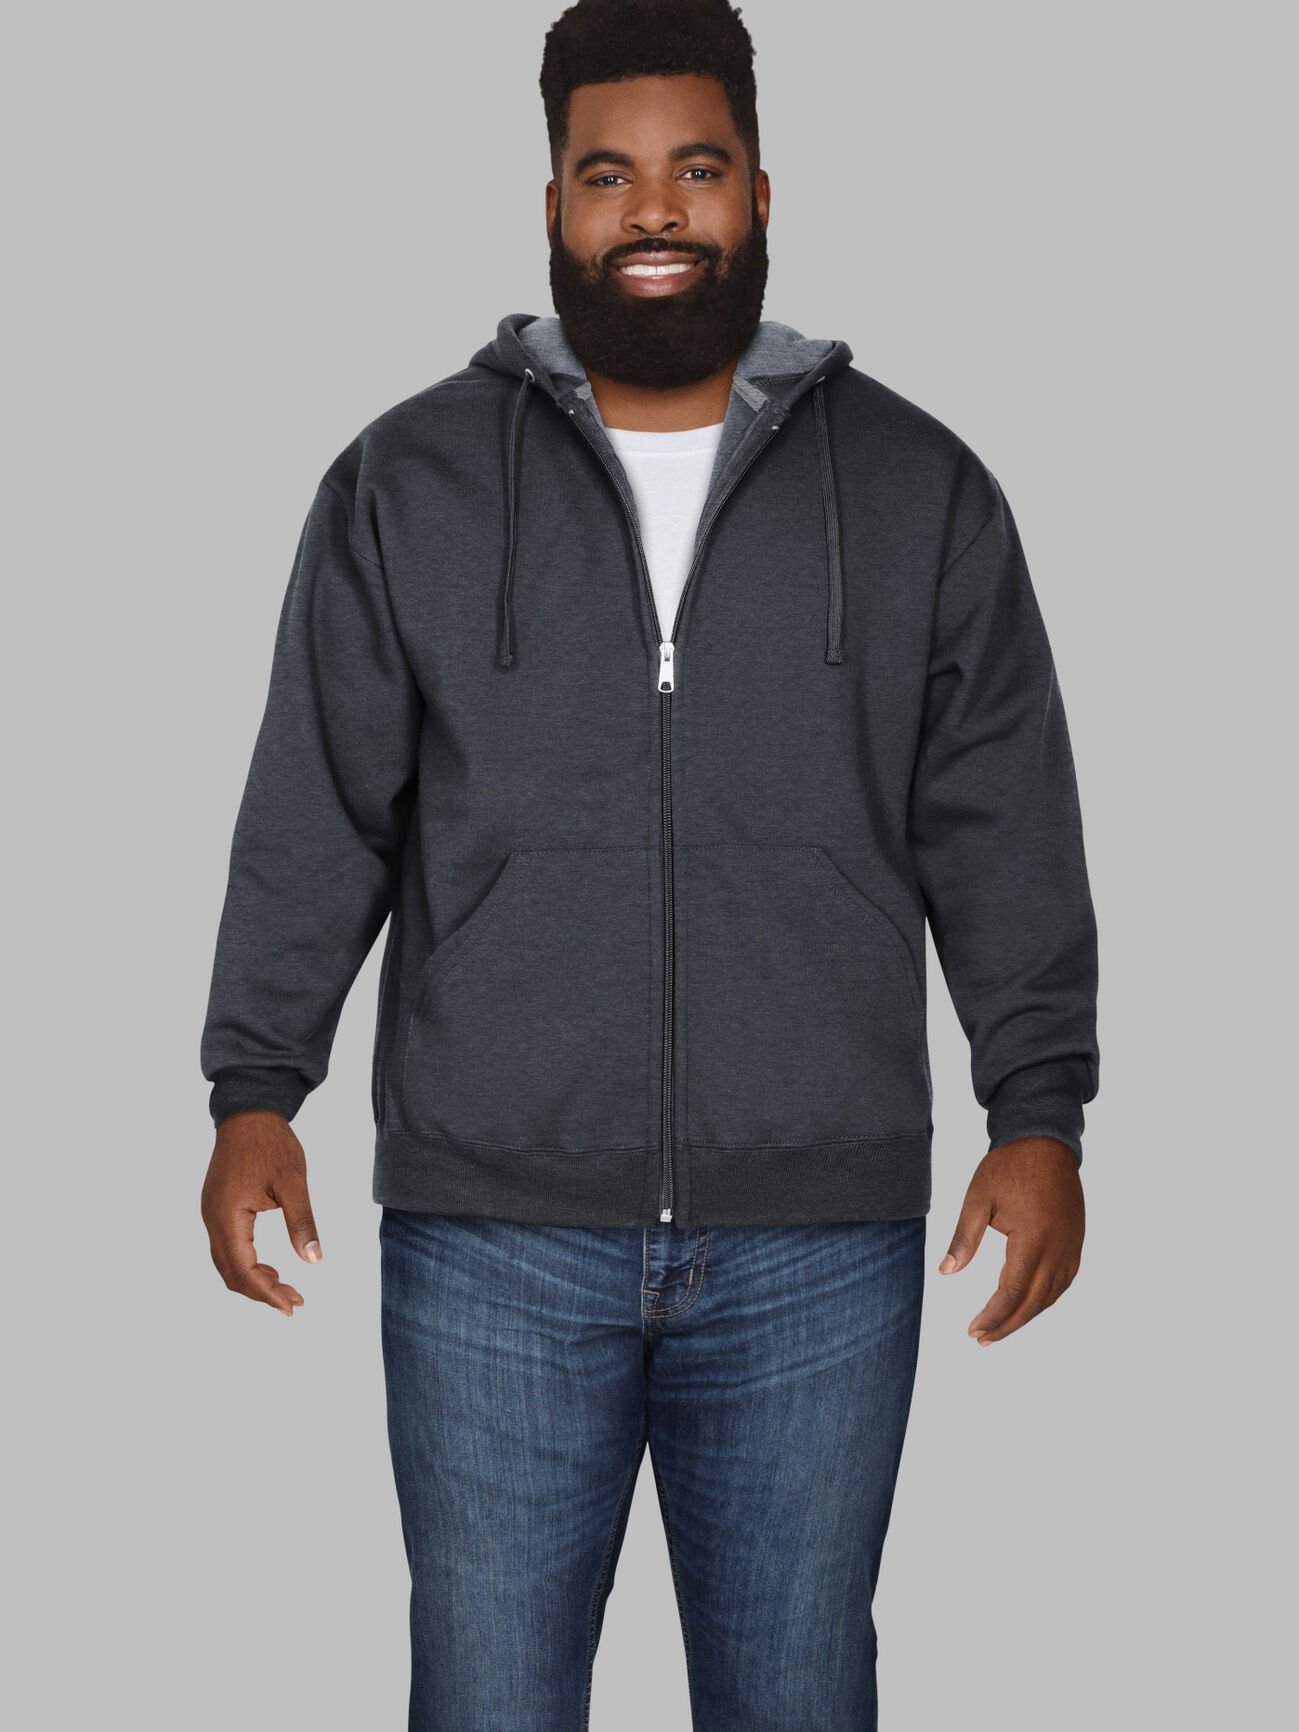 Big Men's Eversoft®  Fleece Full Zip Hoodie Sweatshirt Black Heather